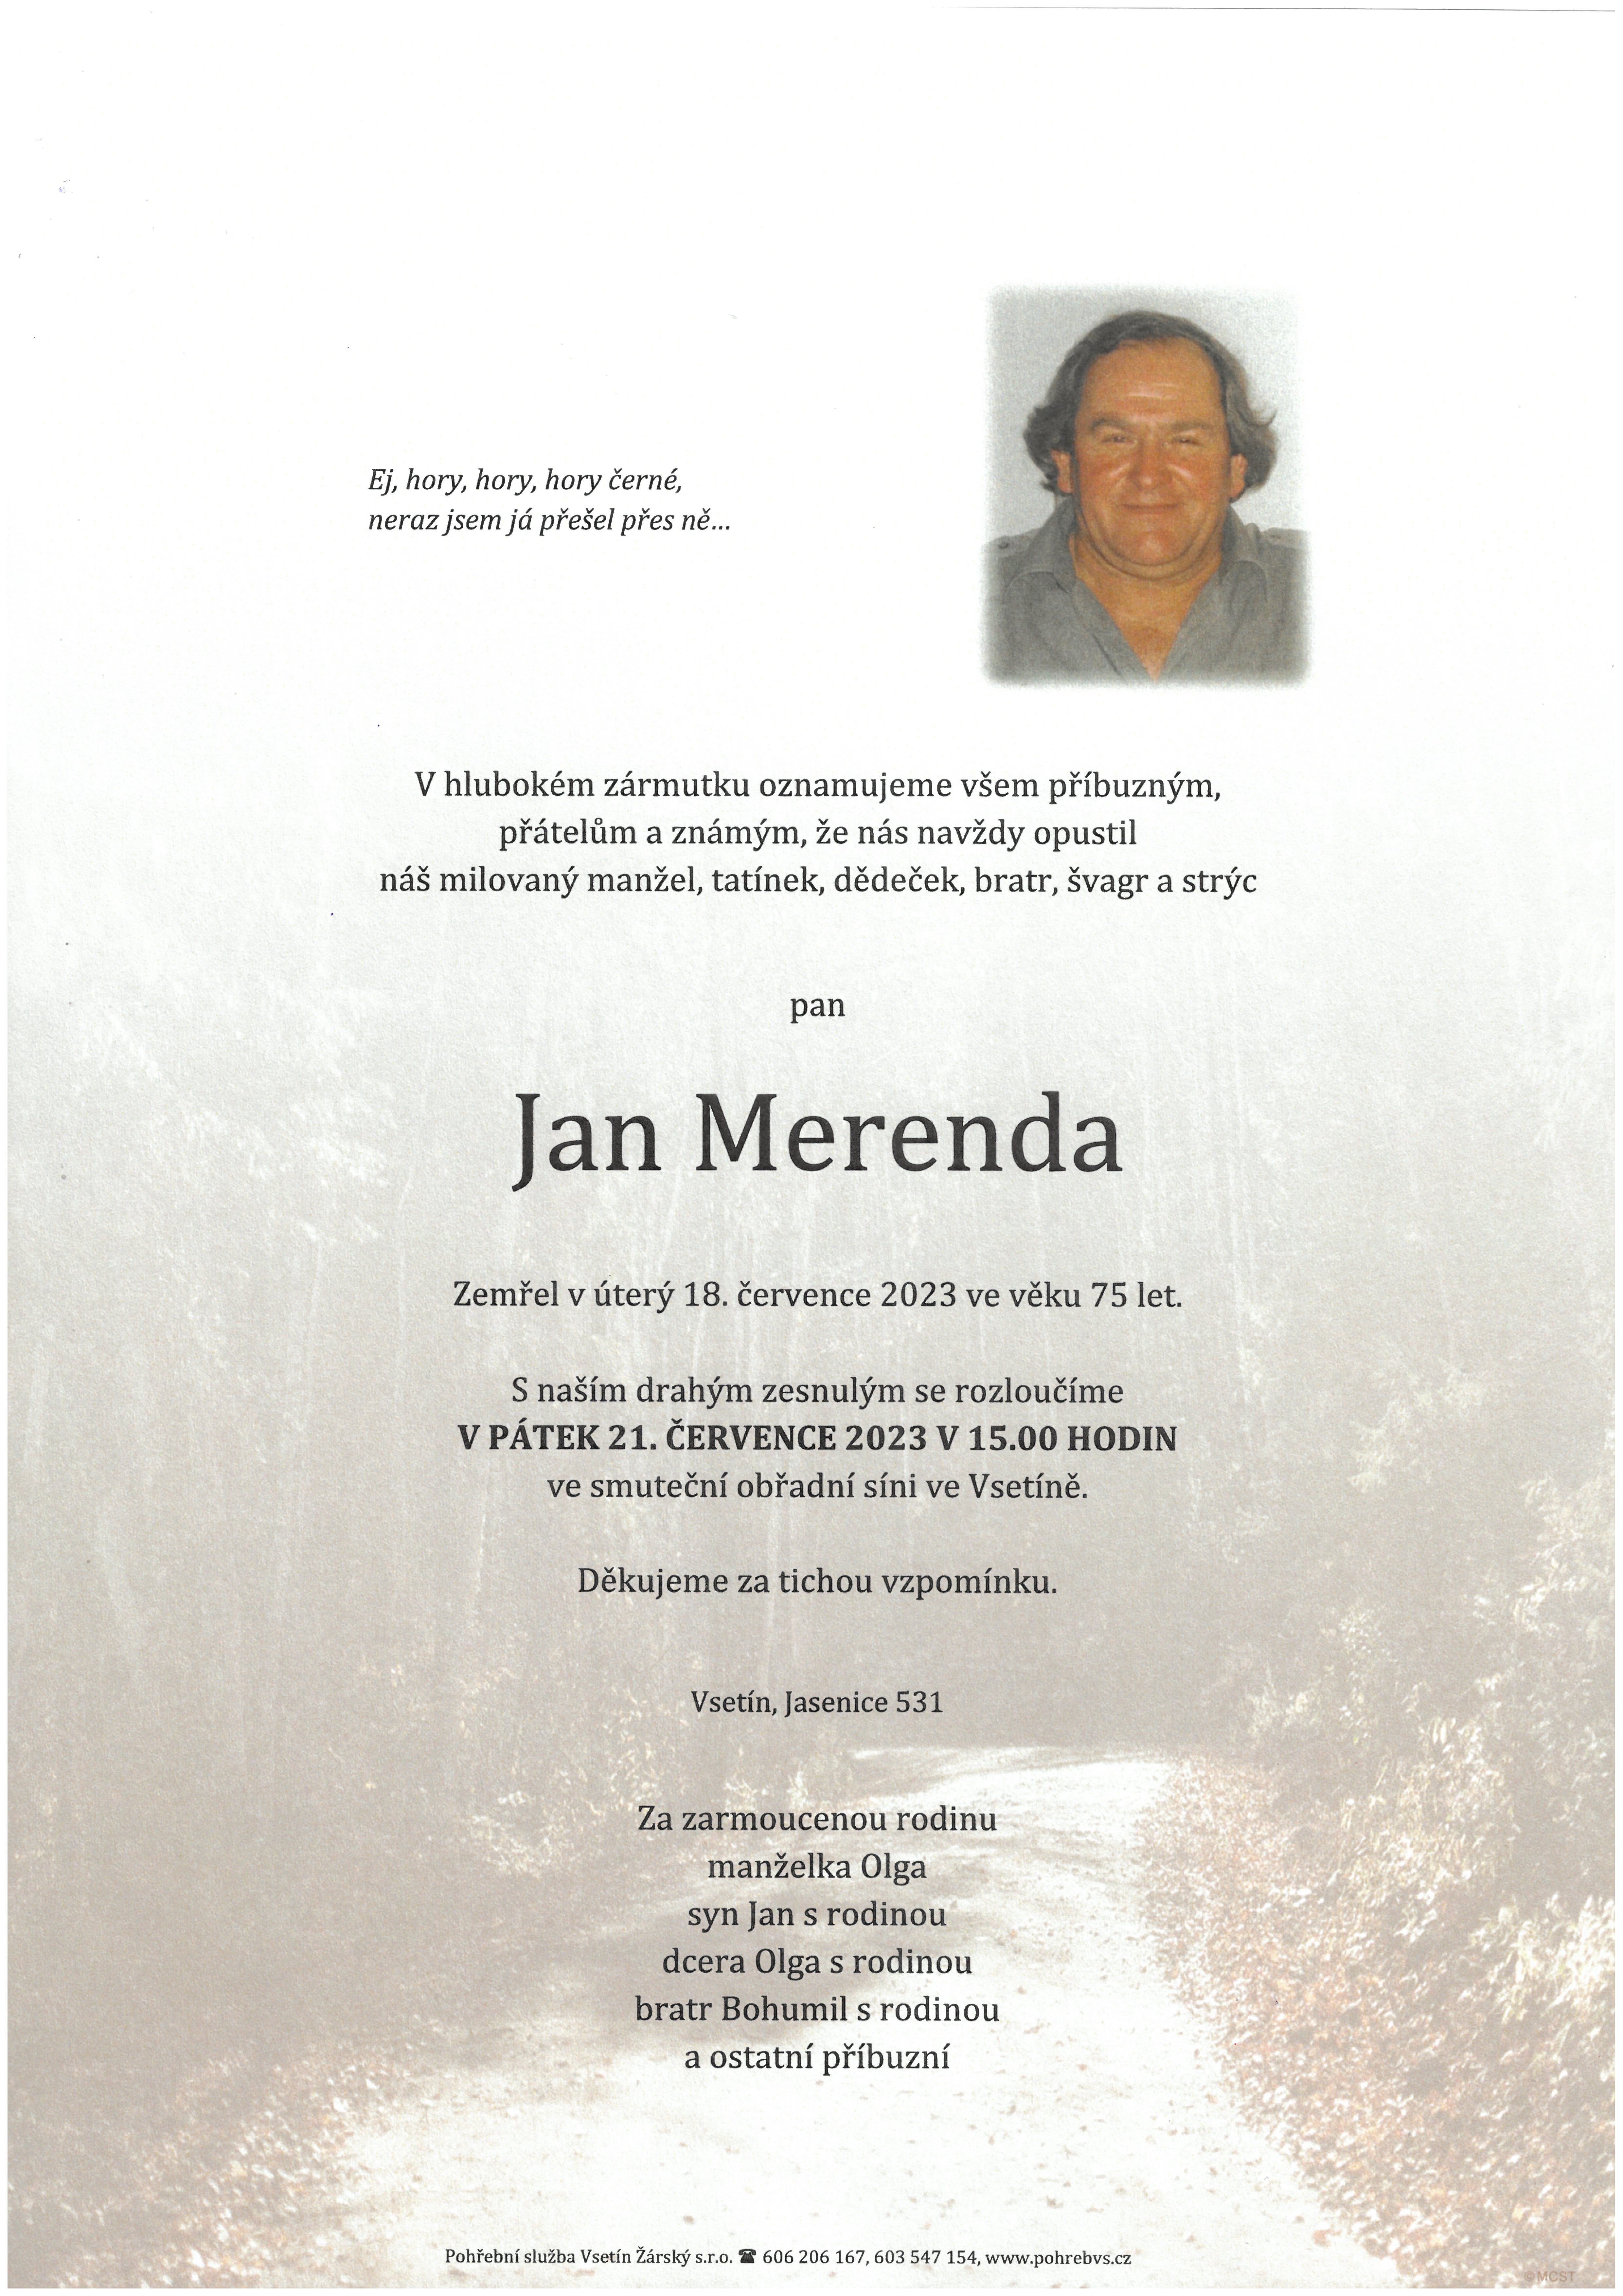 Jan Merenda